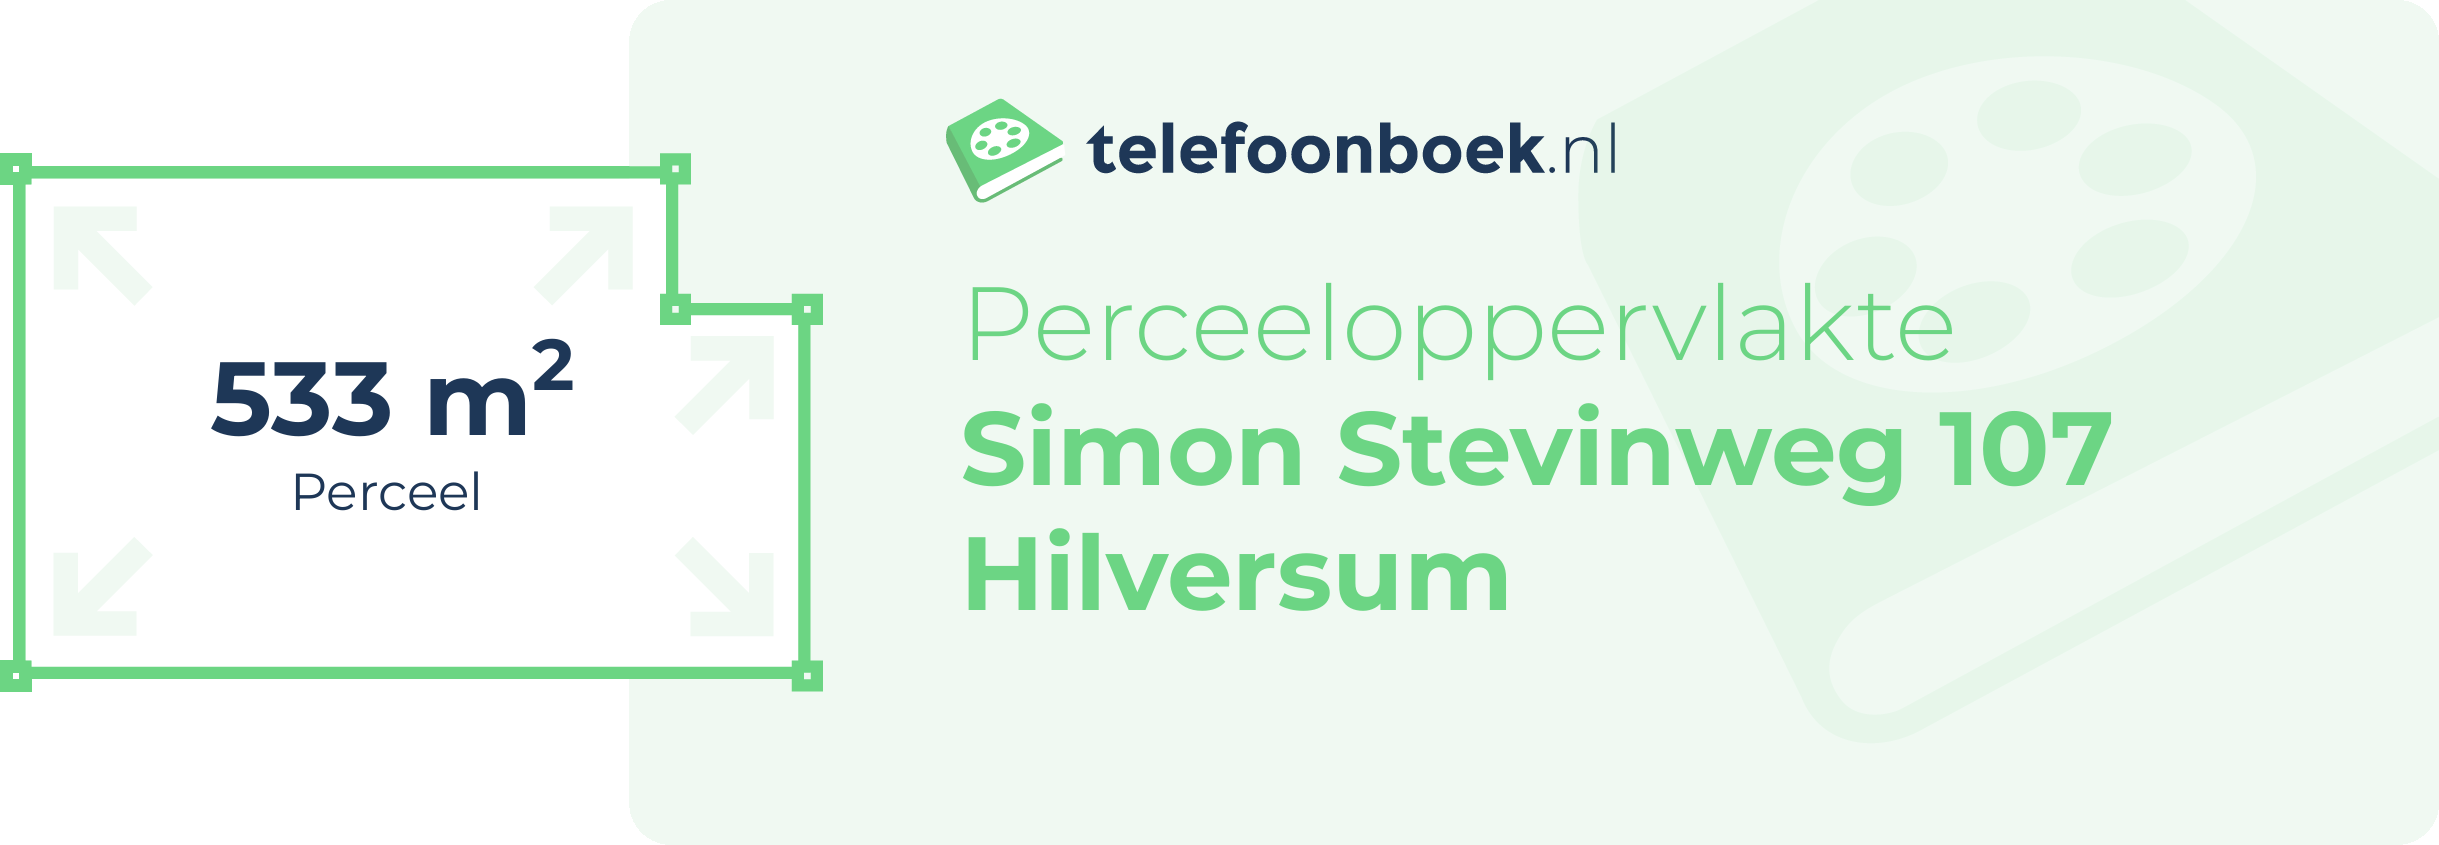 Perceeloppervlakte Simon Stevinweg 107 Hilversum